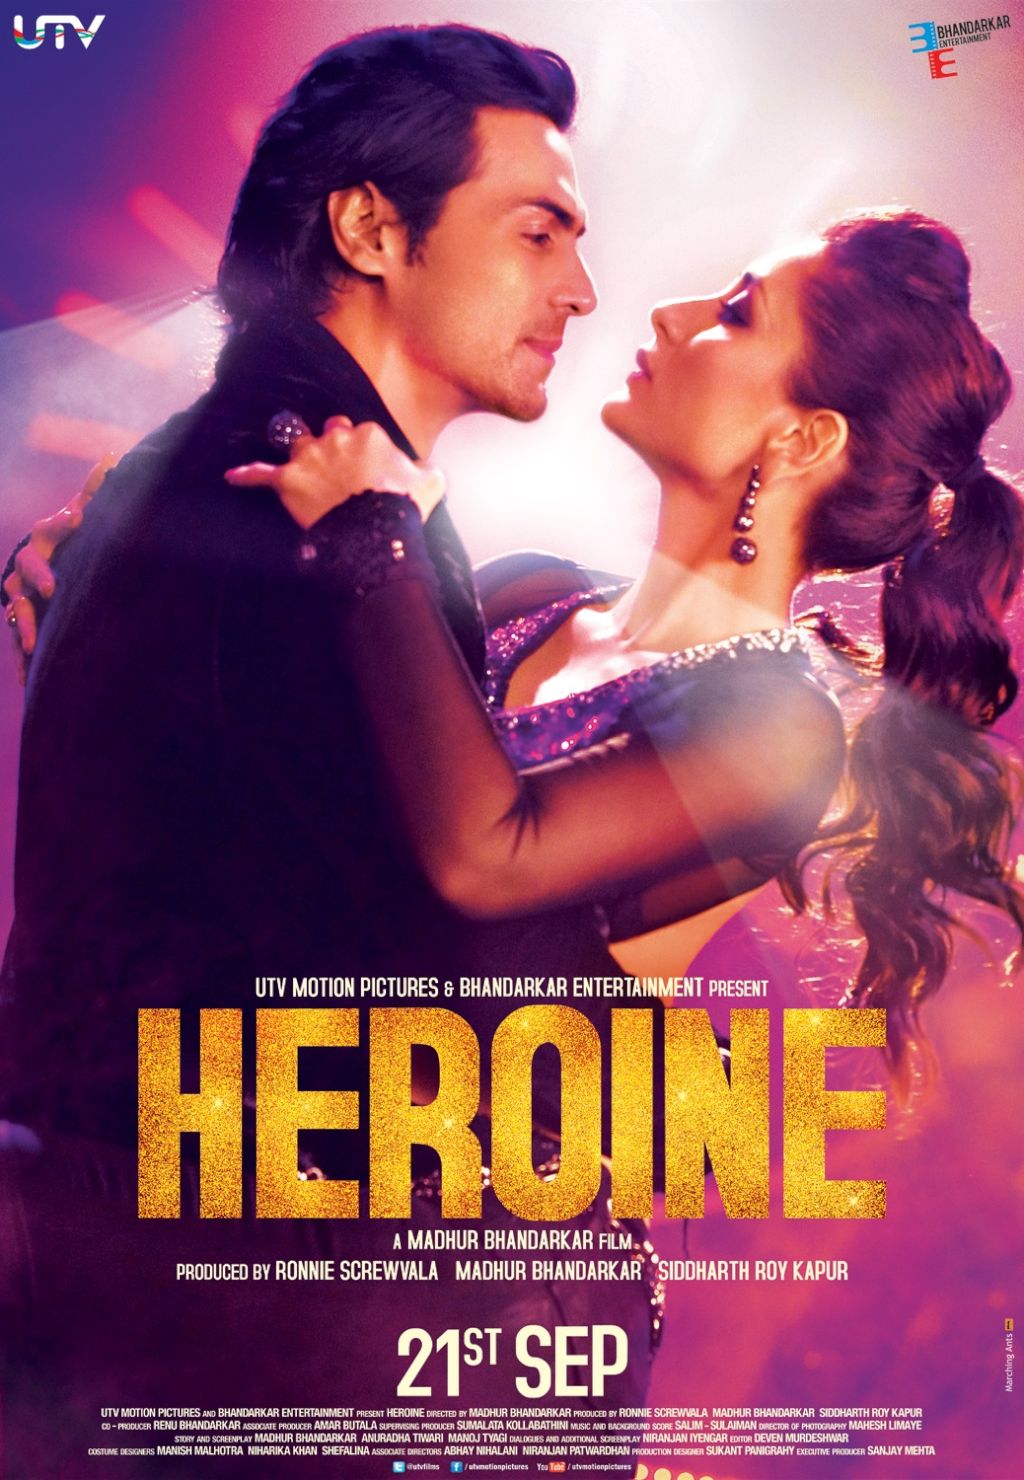 Free Download Of Songs Of Heroine Movie